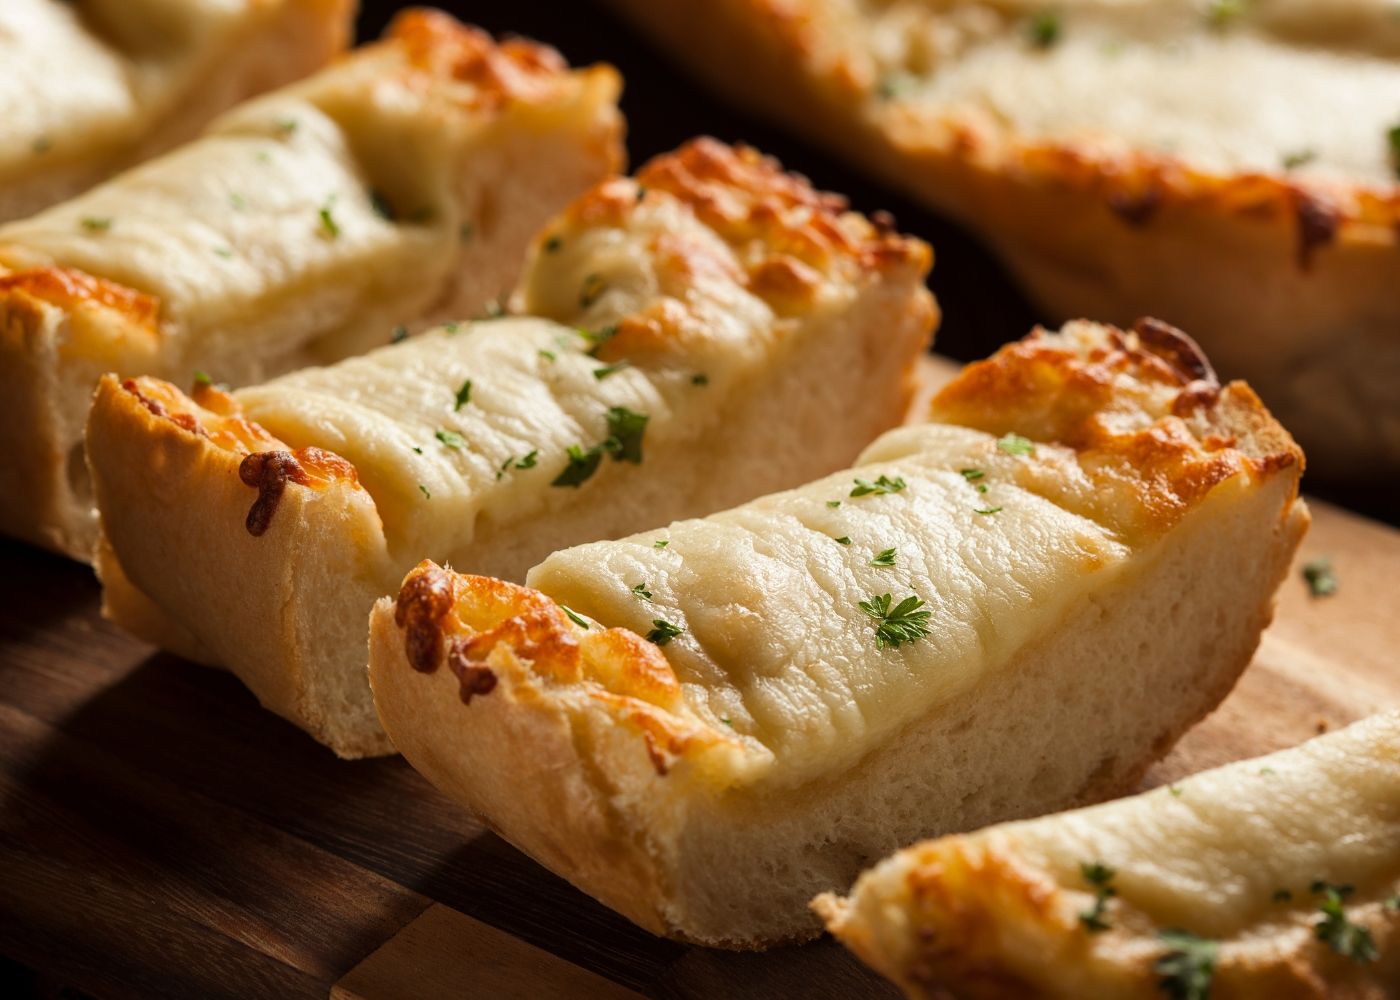 Worlds Best Cheesy Garlic Bread - serves 8-10